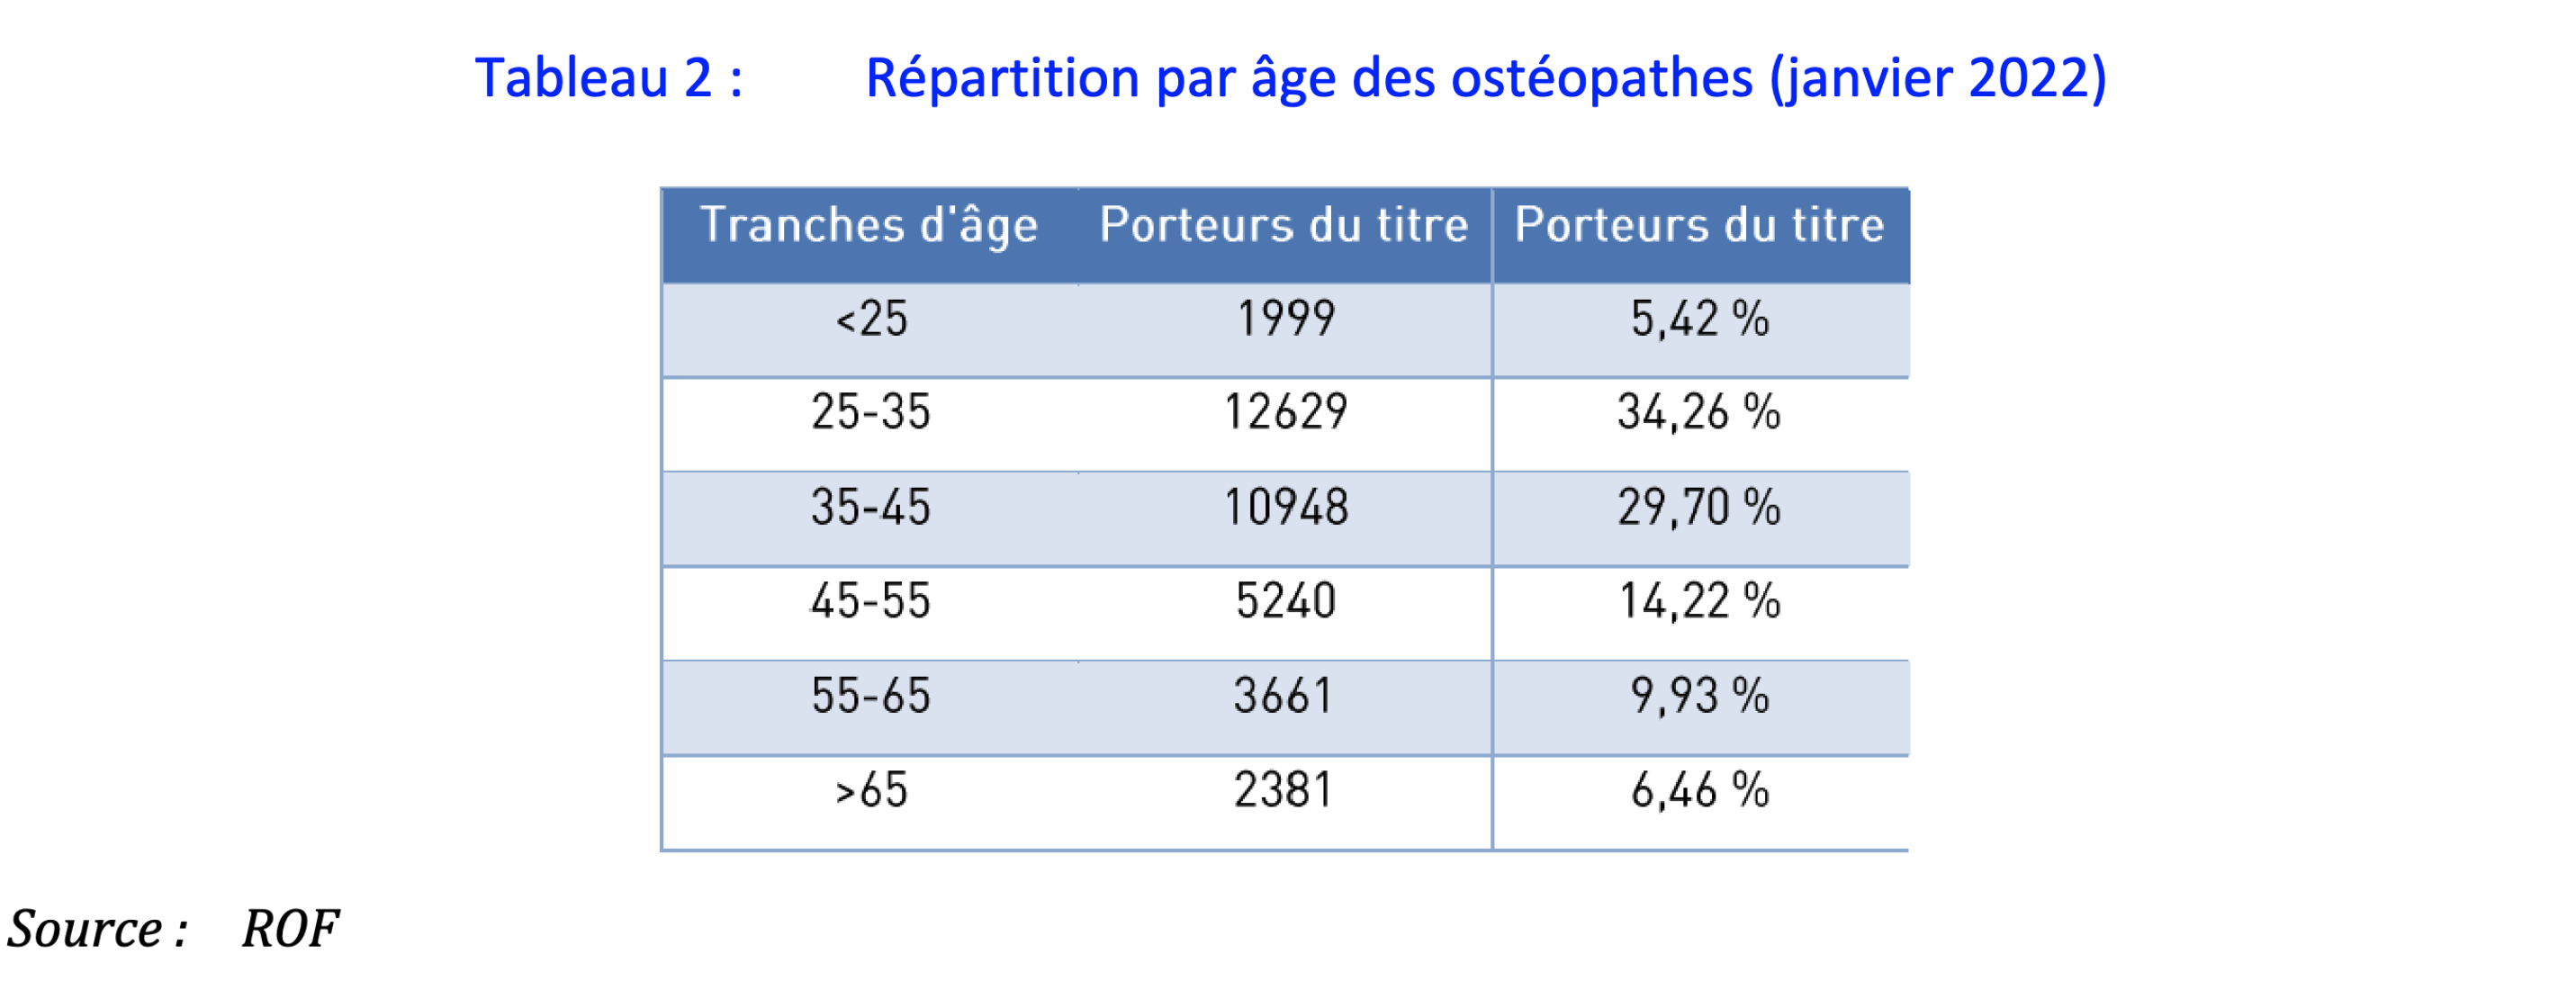 Répartition par âge des ostéopathes en janvier 2022